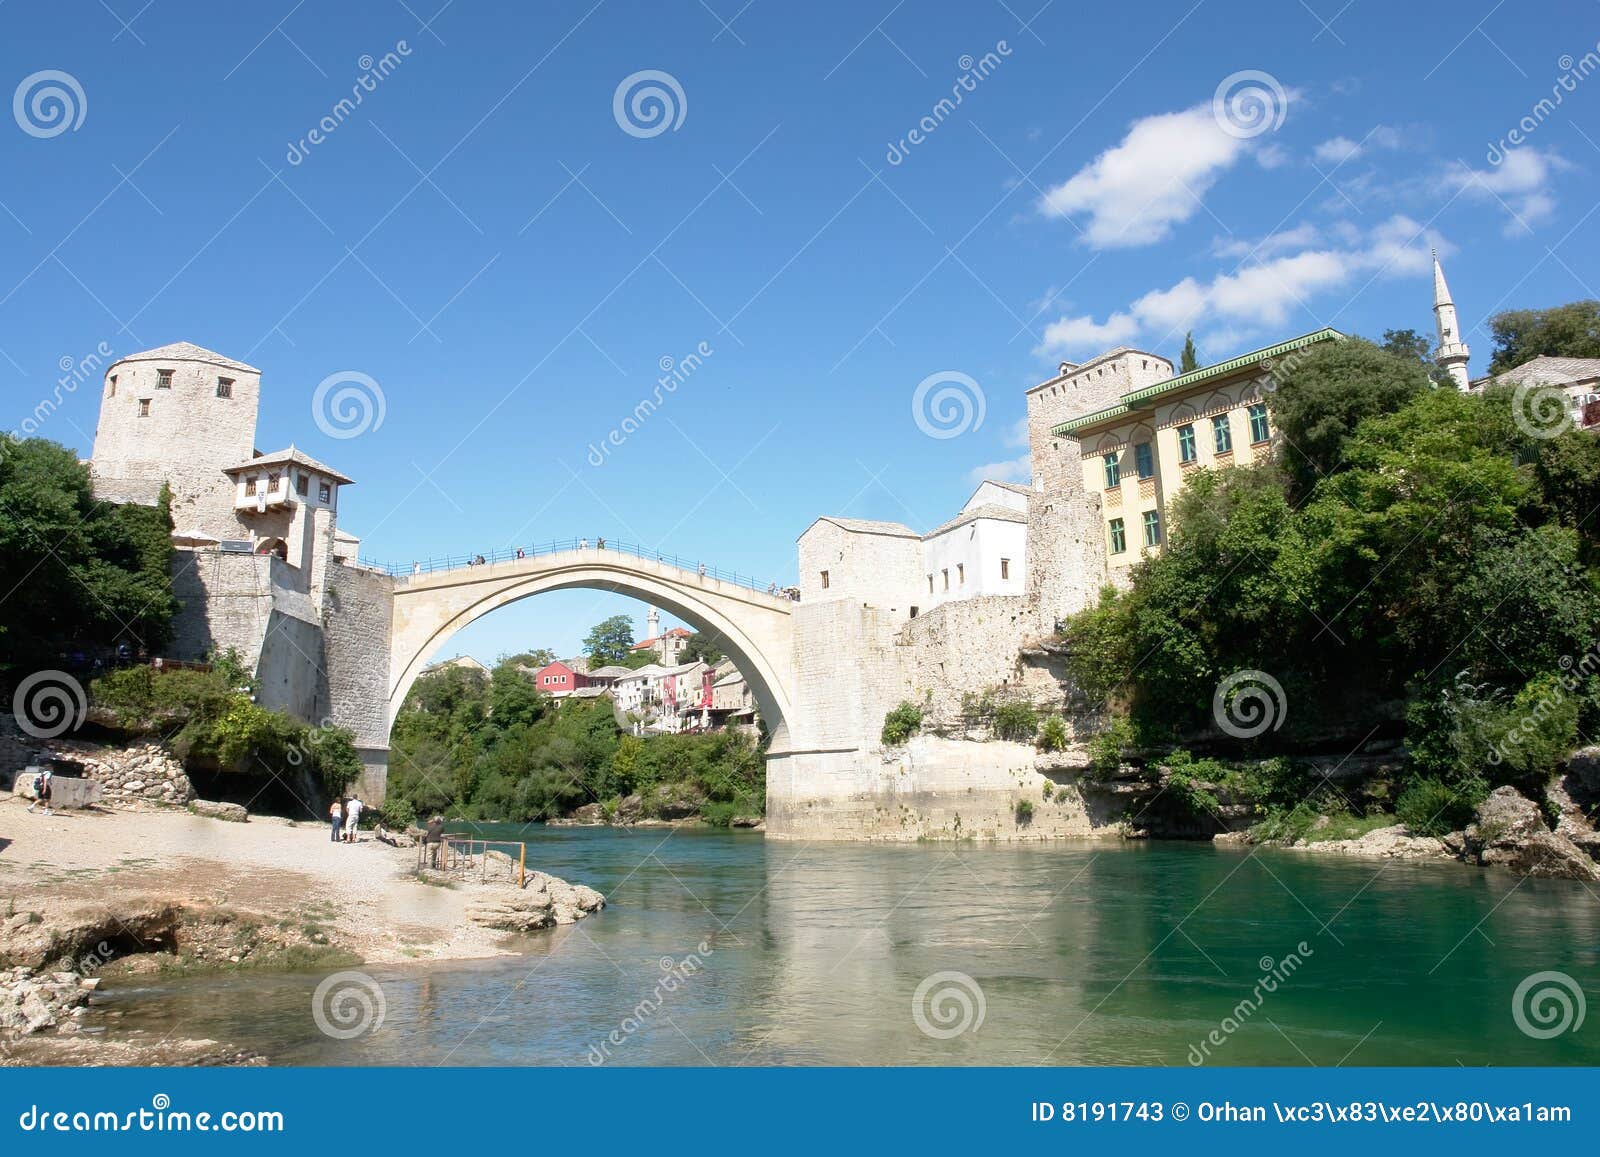 mostar bridge - bosnia herzegovina